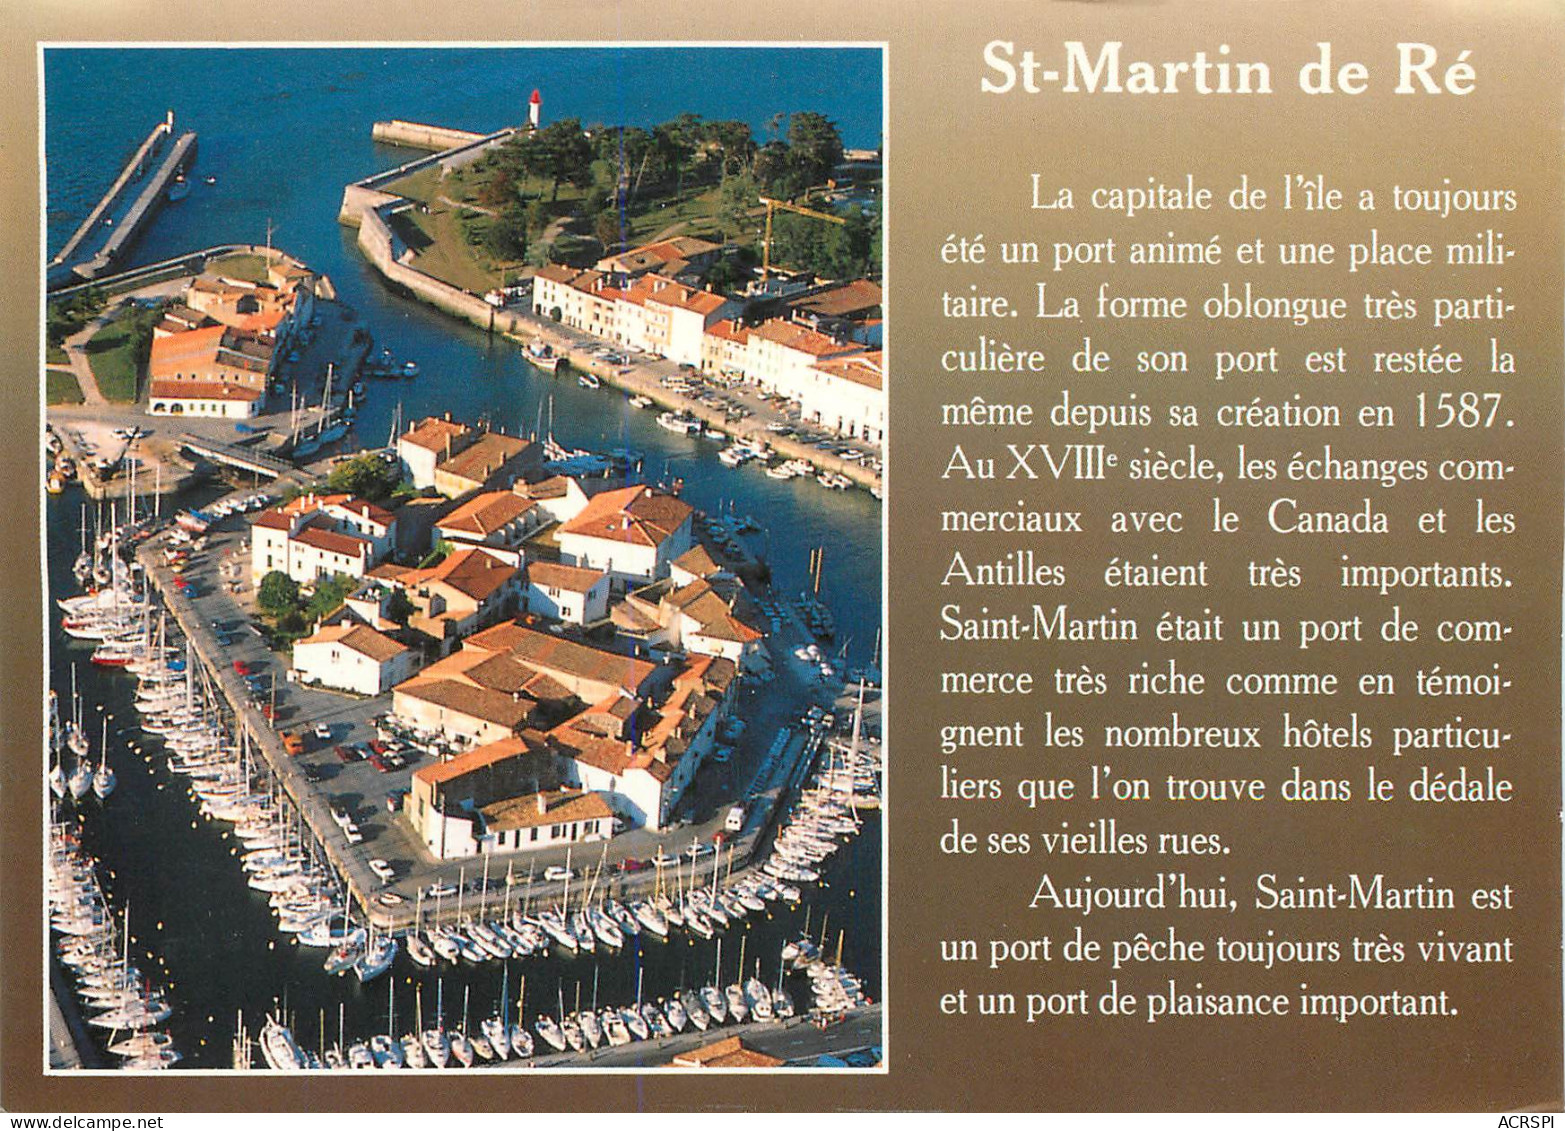 SAINT MARTIN DE Ré   Vue Du Ciel   35 (scan Recto-verso)MA2287Ter - Saint-Martin-de-Ré